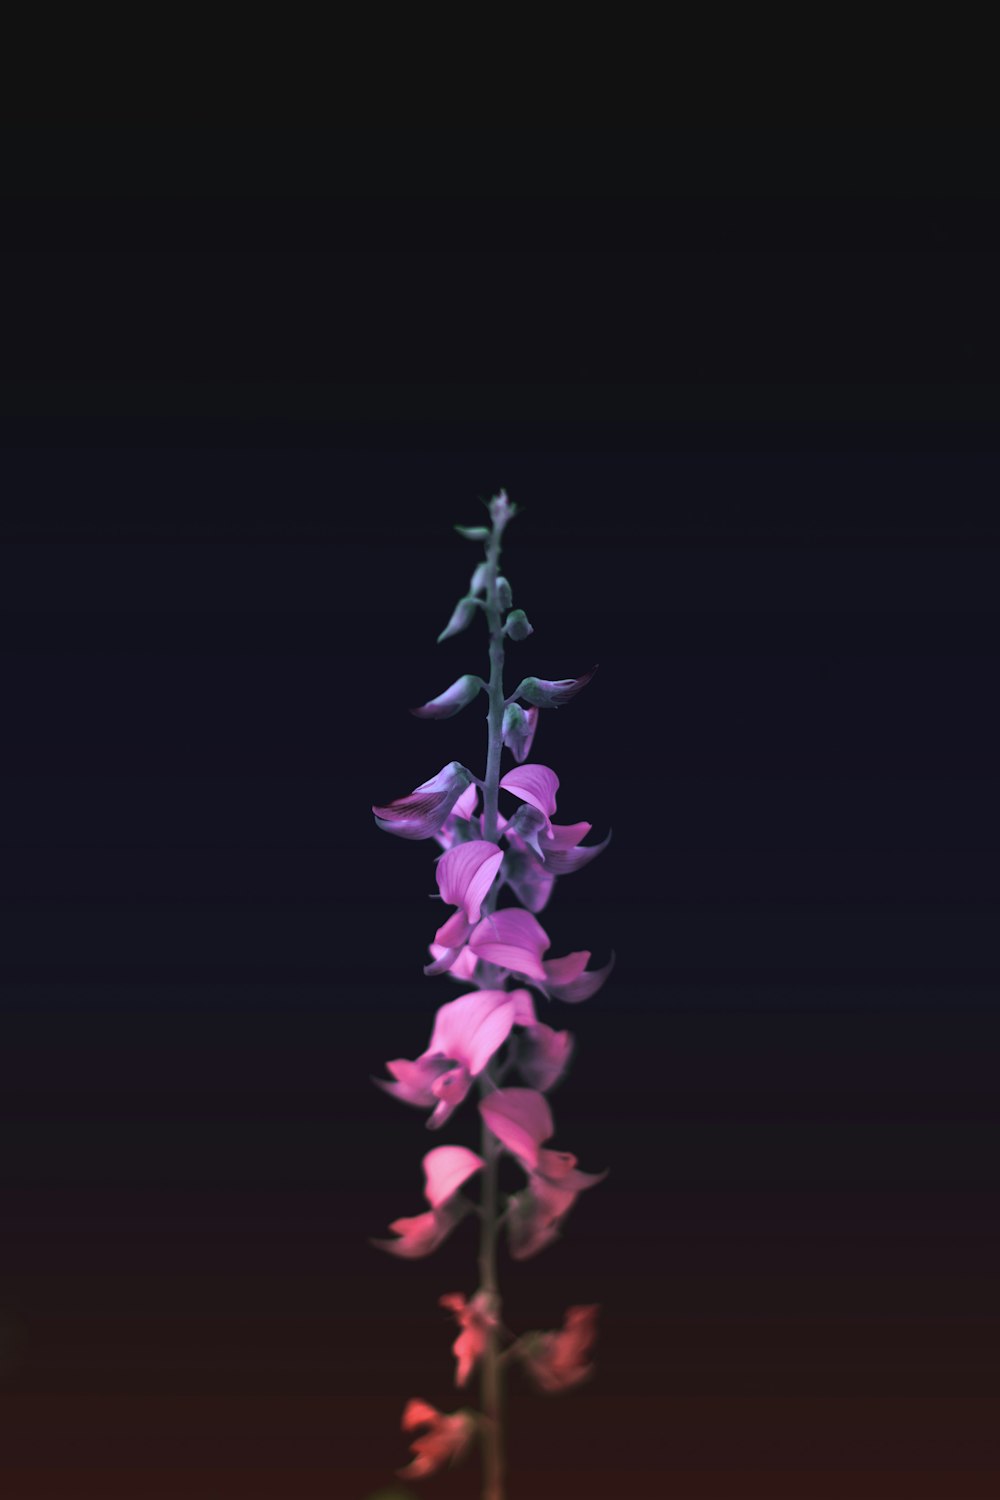 紫色の花びらのセレクティブフォーカス写真